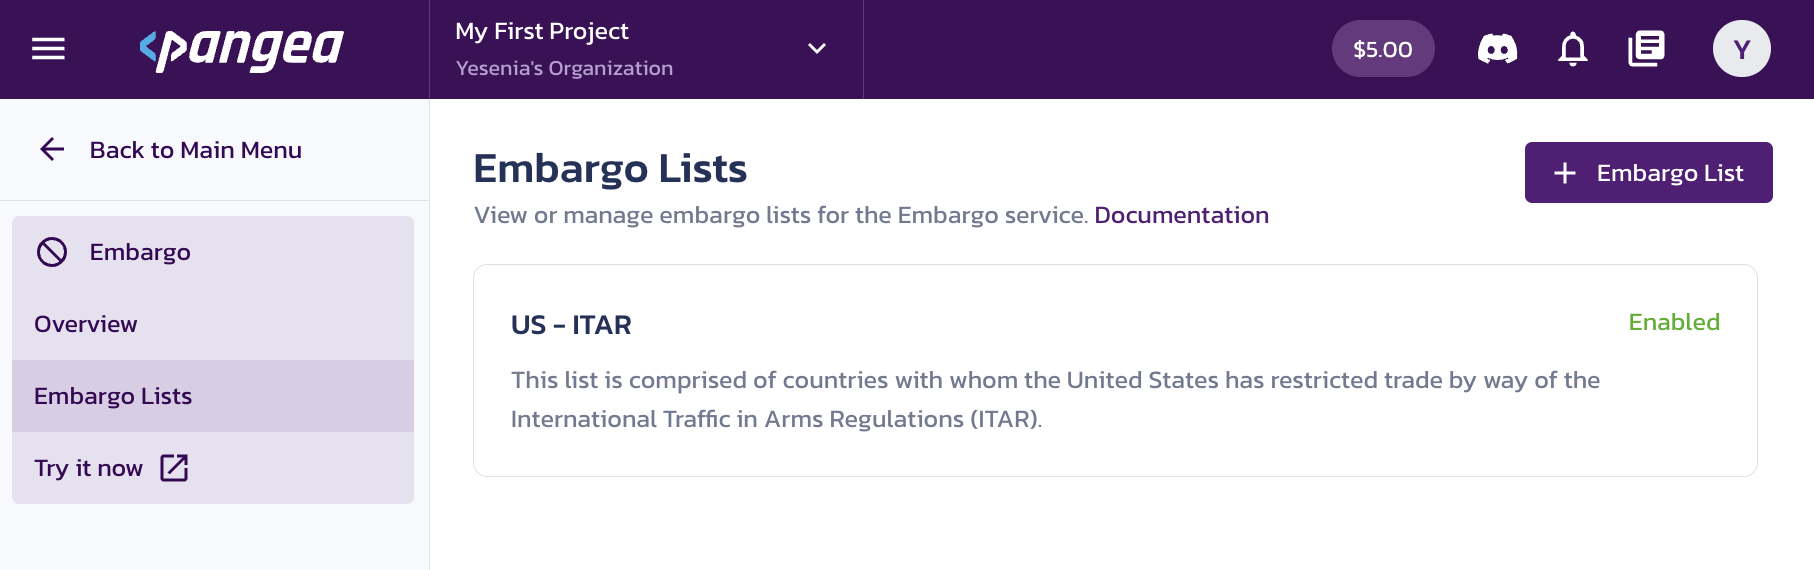 Embargo List Overview